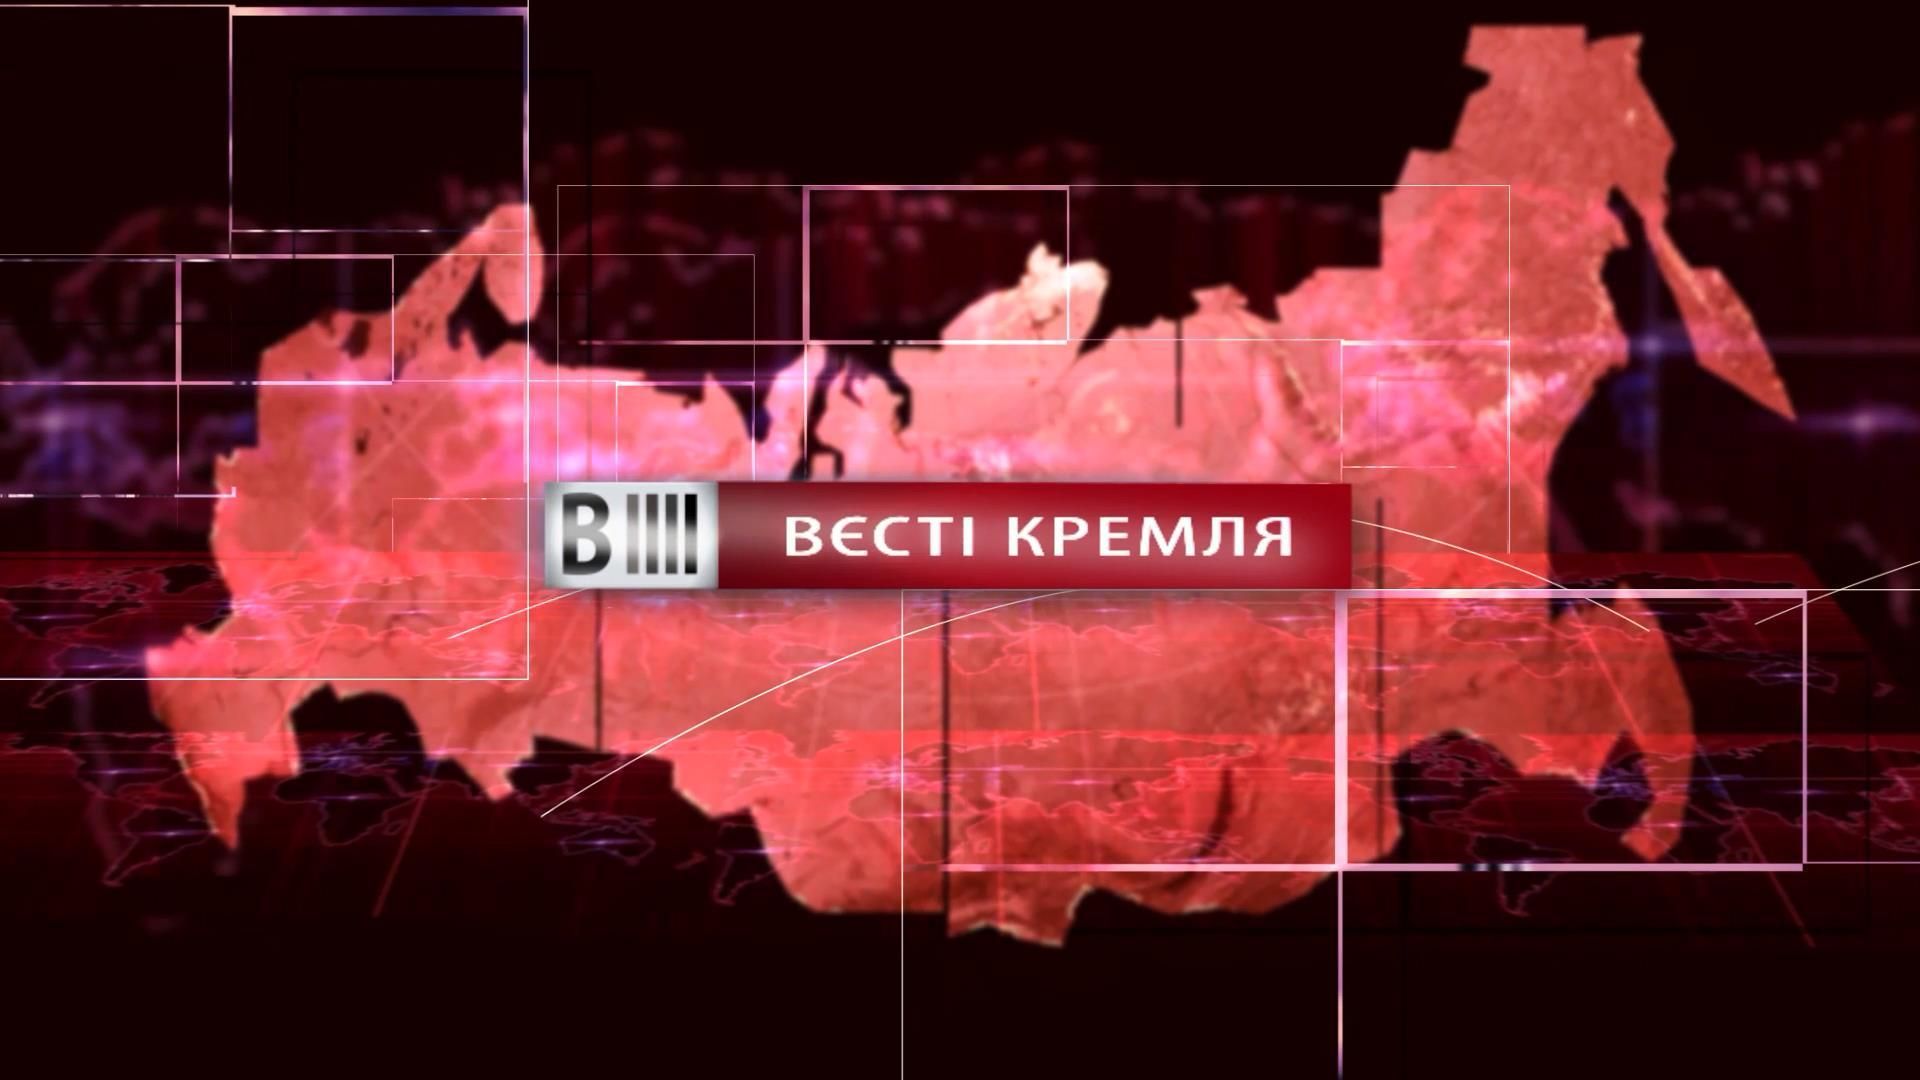 Дивіться "Вєсті Кремля". Путін зганьбився на кожному екрані. Народне привітання від мера Сочі